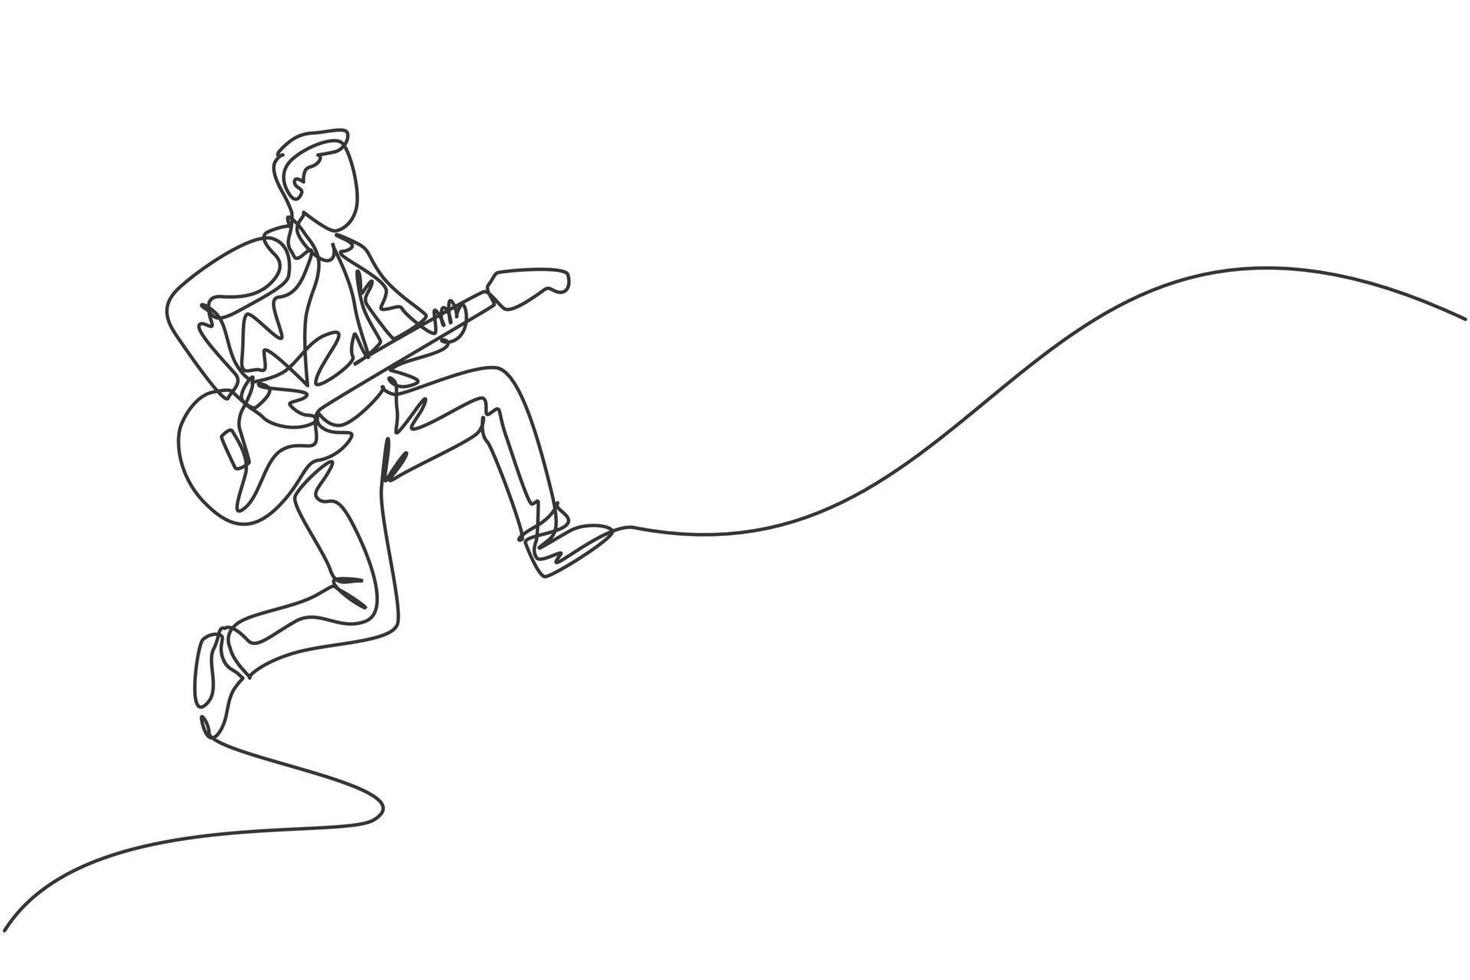 Eine durchgehende Strichzeichnung eines jungen glücklichen männlichen Gitarristen, der beim Spielen von E-Gitarre auf der Musikkonzertbühne springt. Musiker Künstler Performance Konzept Single Line Draw Design Vector Illustration